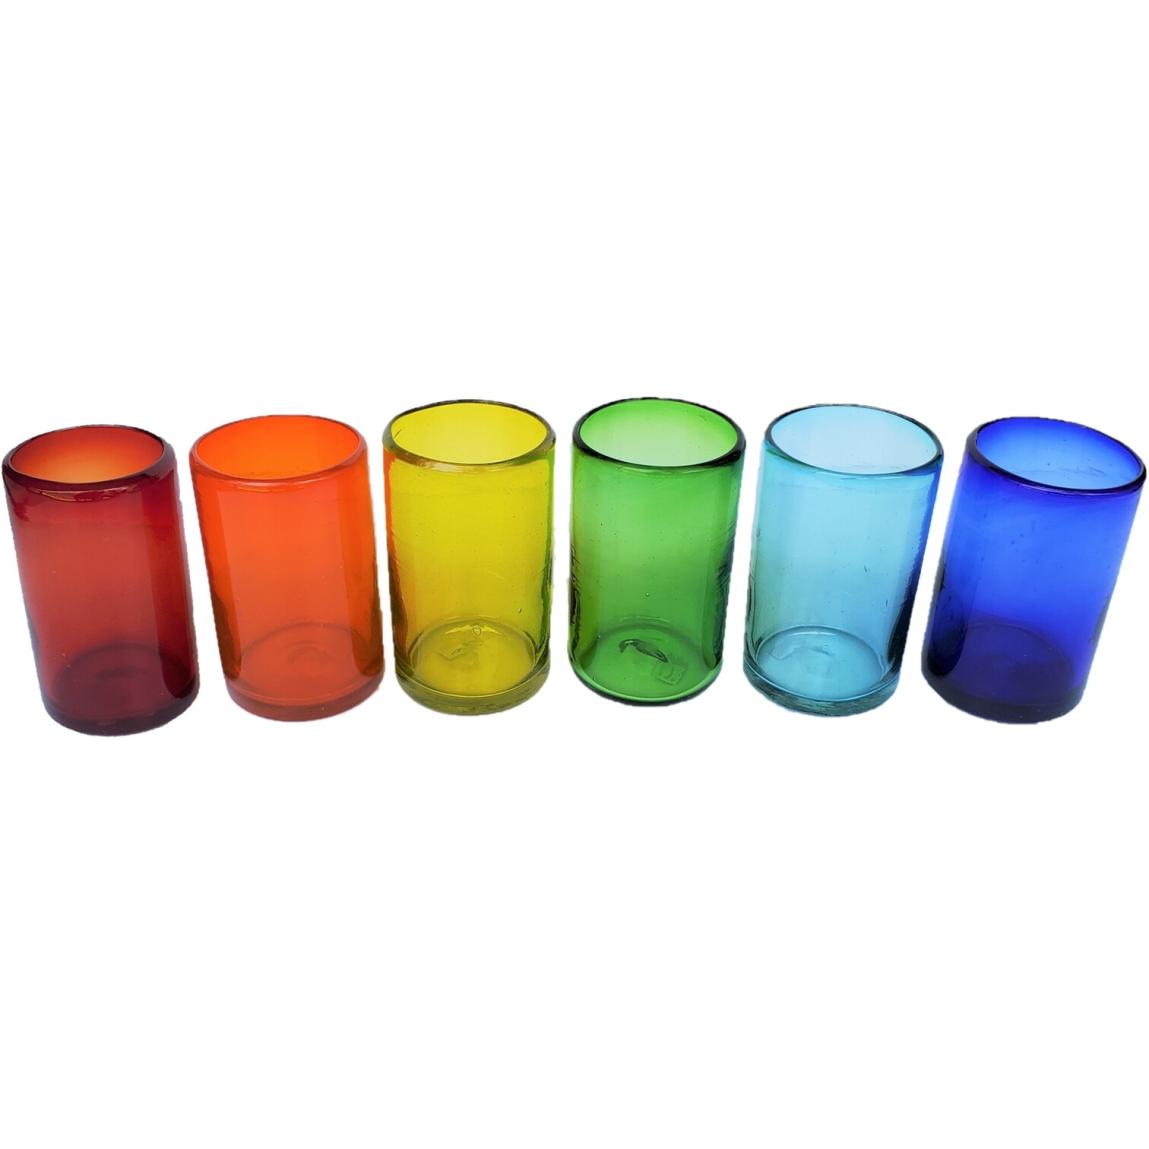 Novedades / vasos grandes de colores Arcoris, 14 oz, Vidrio Reciclado, Libre de Plomo y Toxinas / stos artesanales vasos le darn un toque clsico a su bebida favorita.